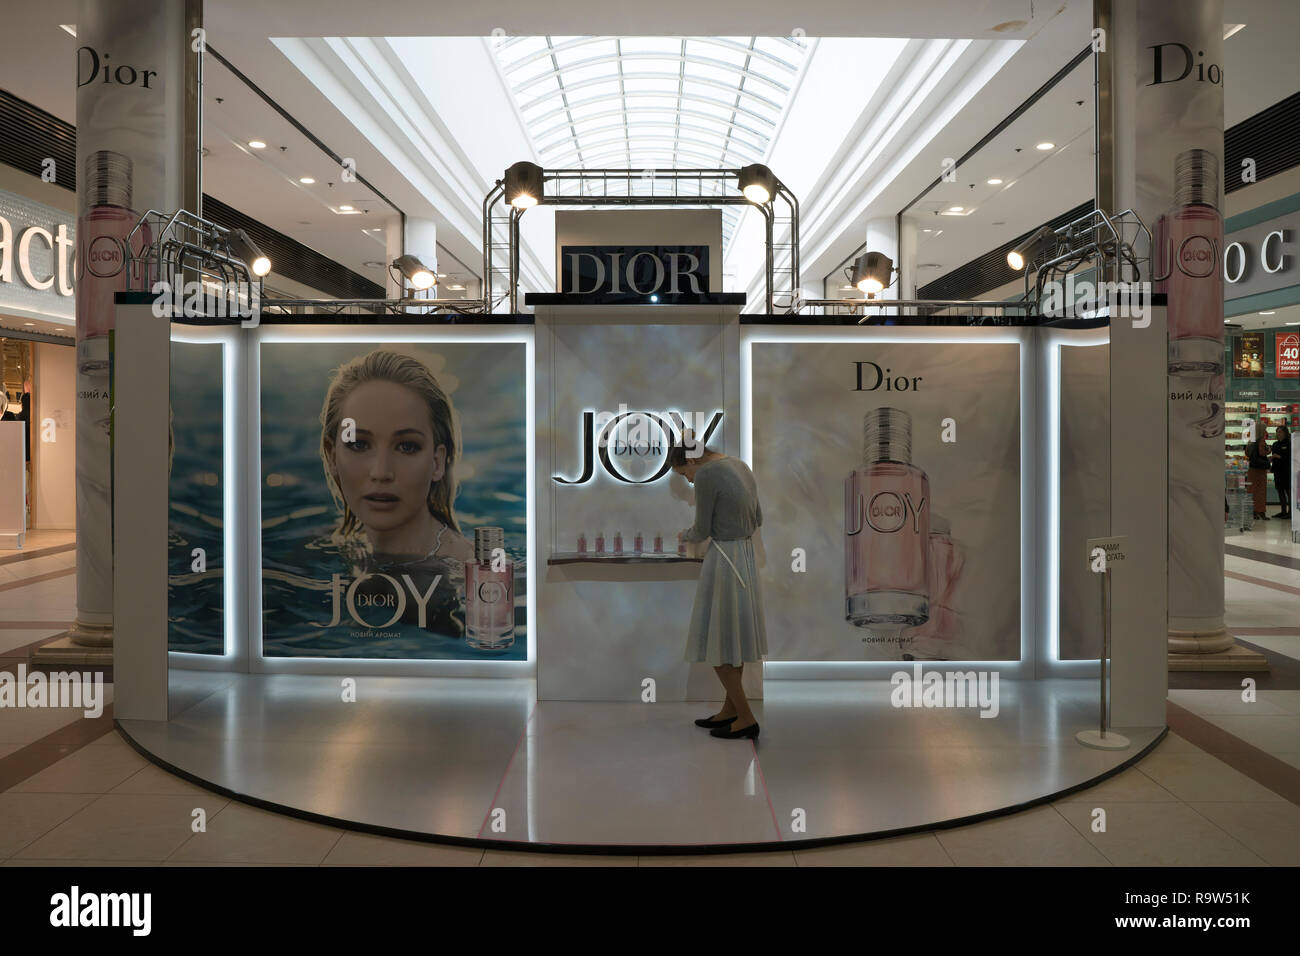 Campagne de publicité pour le nouveau parfum 'Joy' de Christian Dior dans un centre commercial dans le centre-ville de Kiev, Ukraine. Banque D'Images